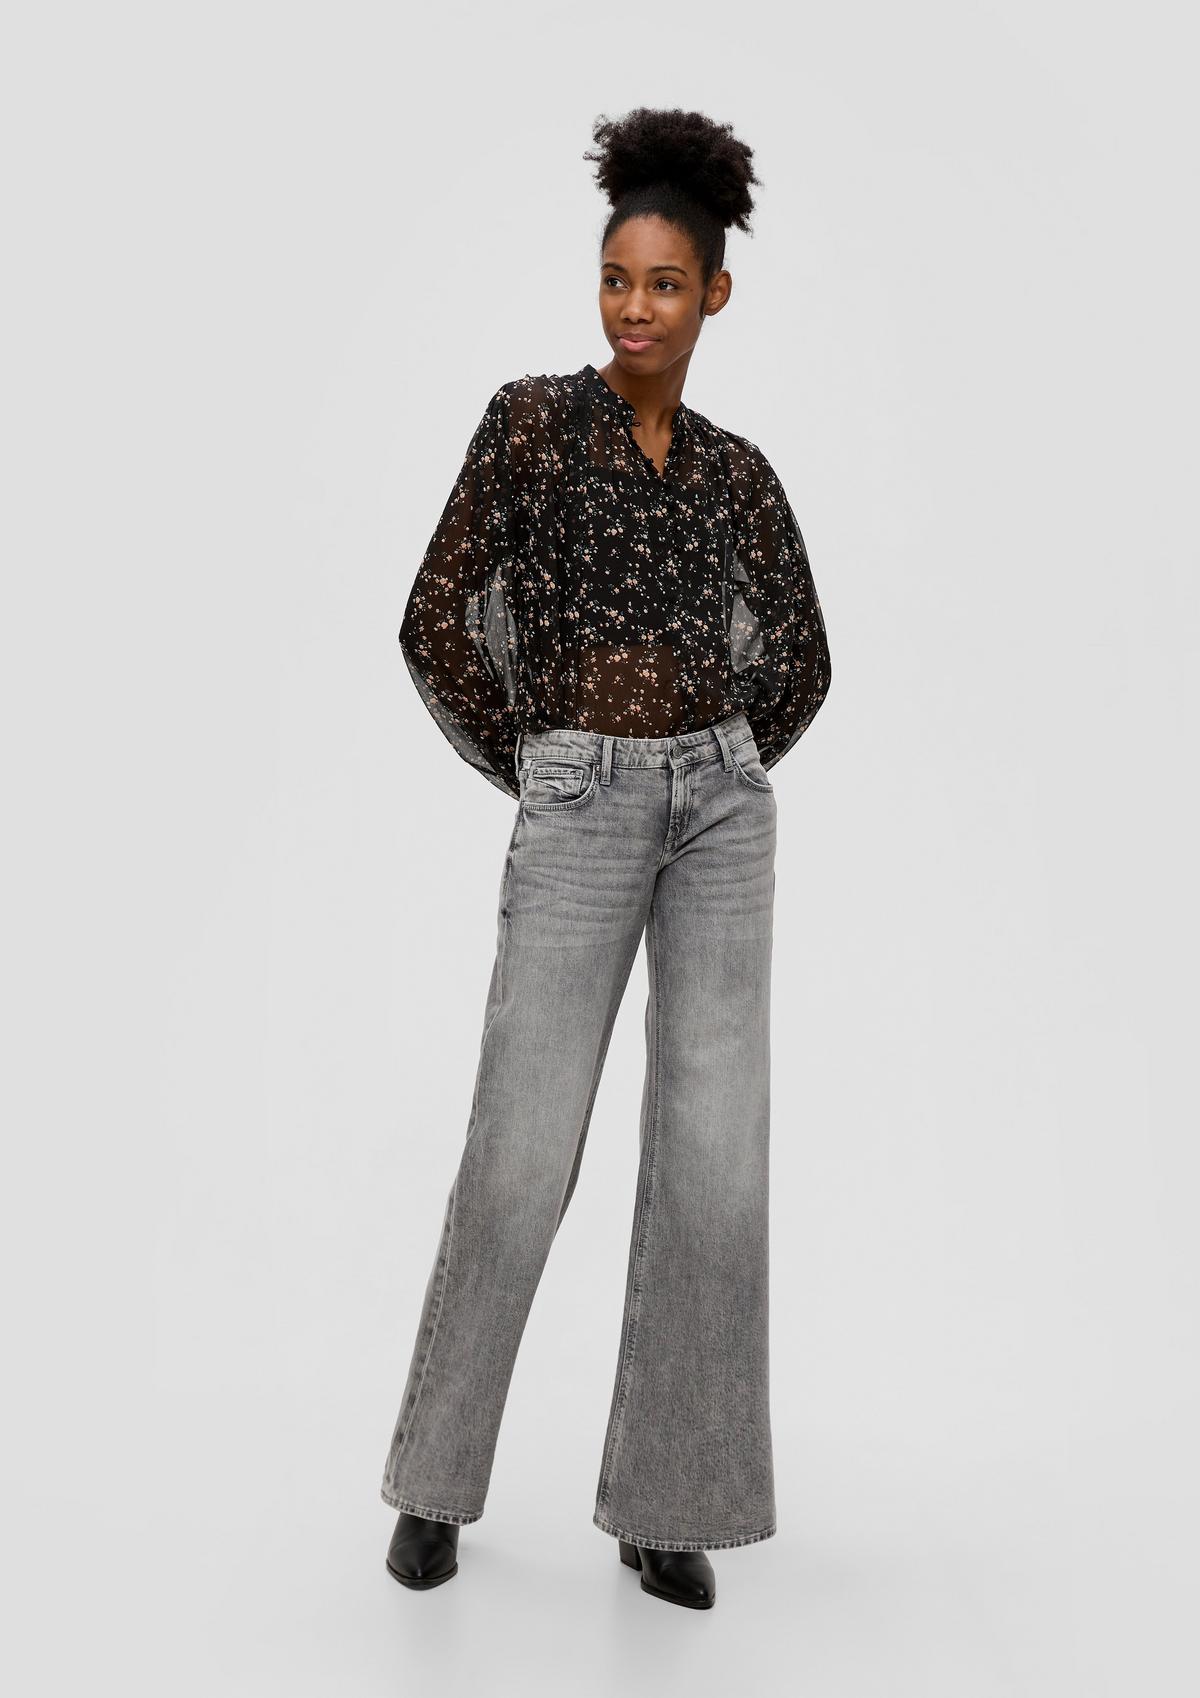 Catie jeans / slim fit / low rise / wide leg / cotton blend